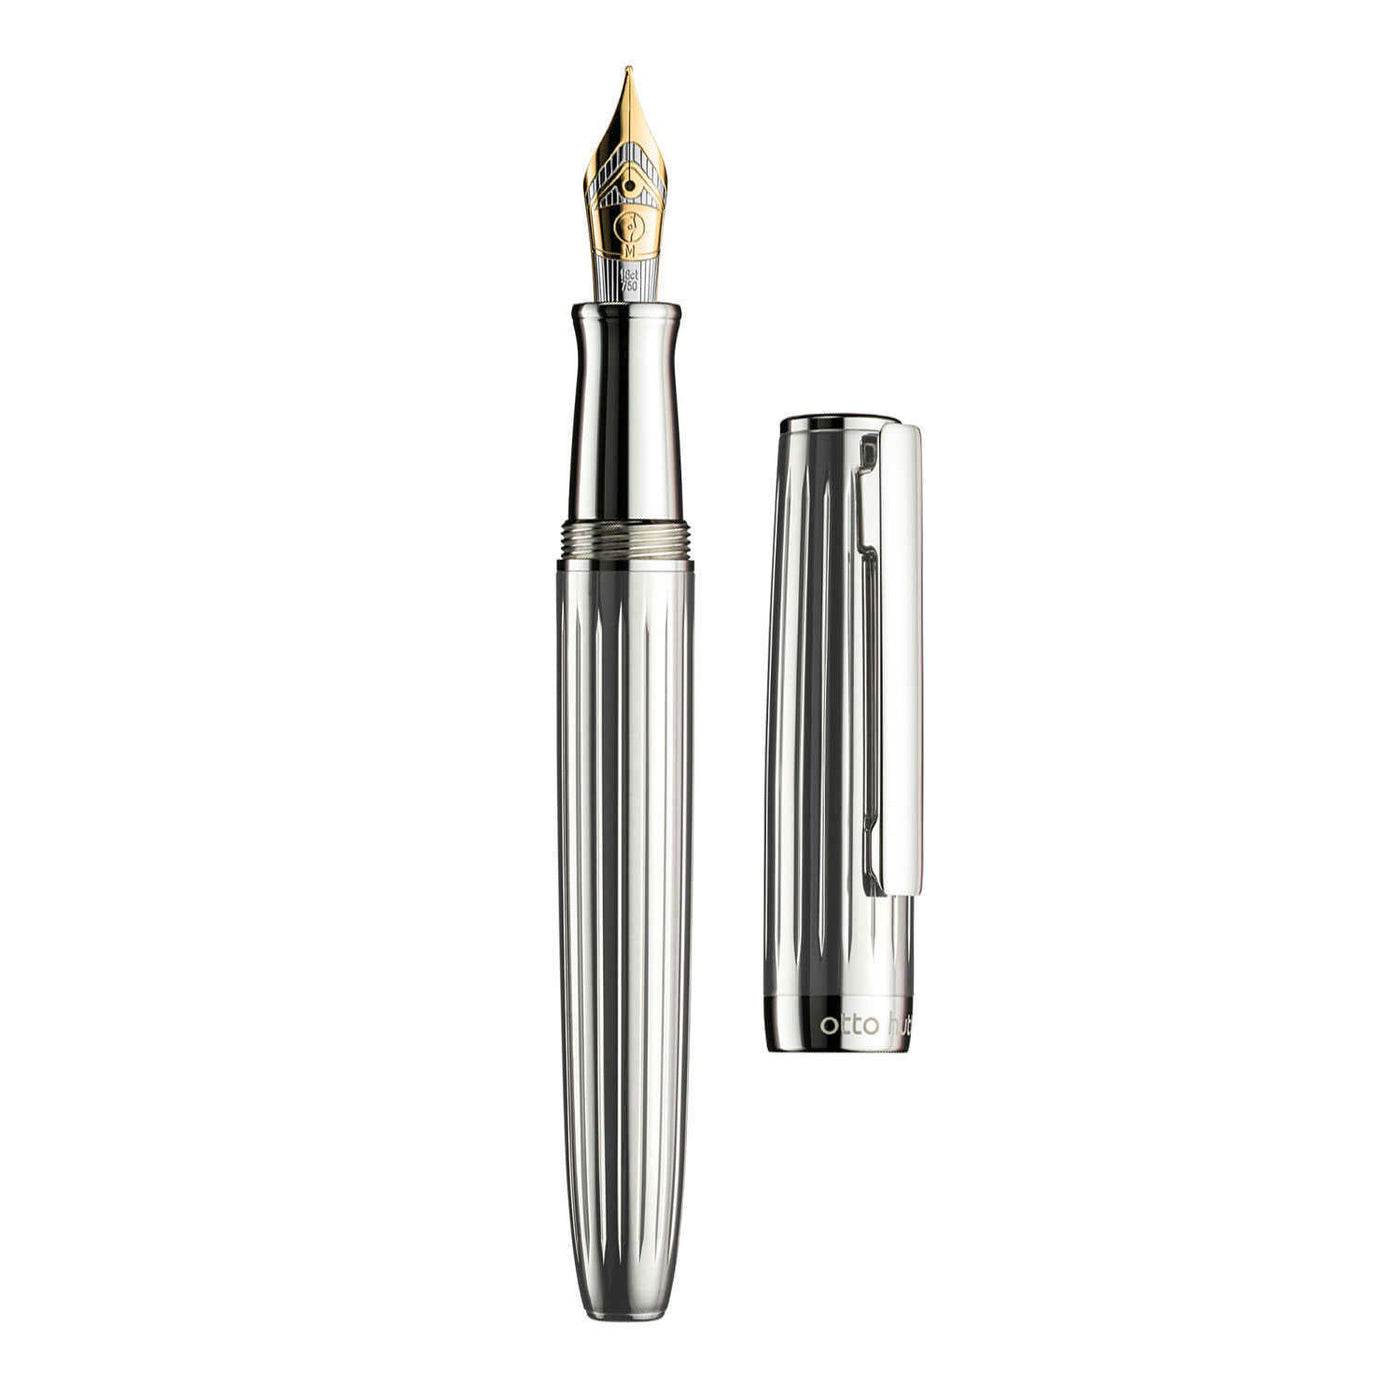 Otto Hutt Design 07 Fountain Pen Silver 18K Gold Nib 2